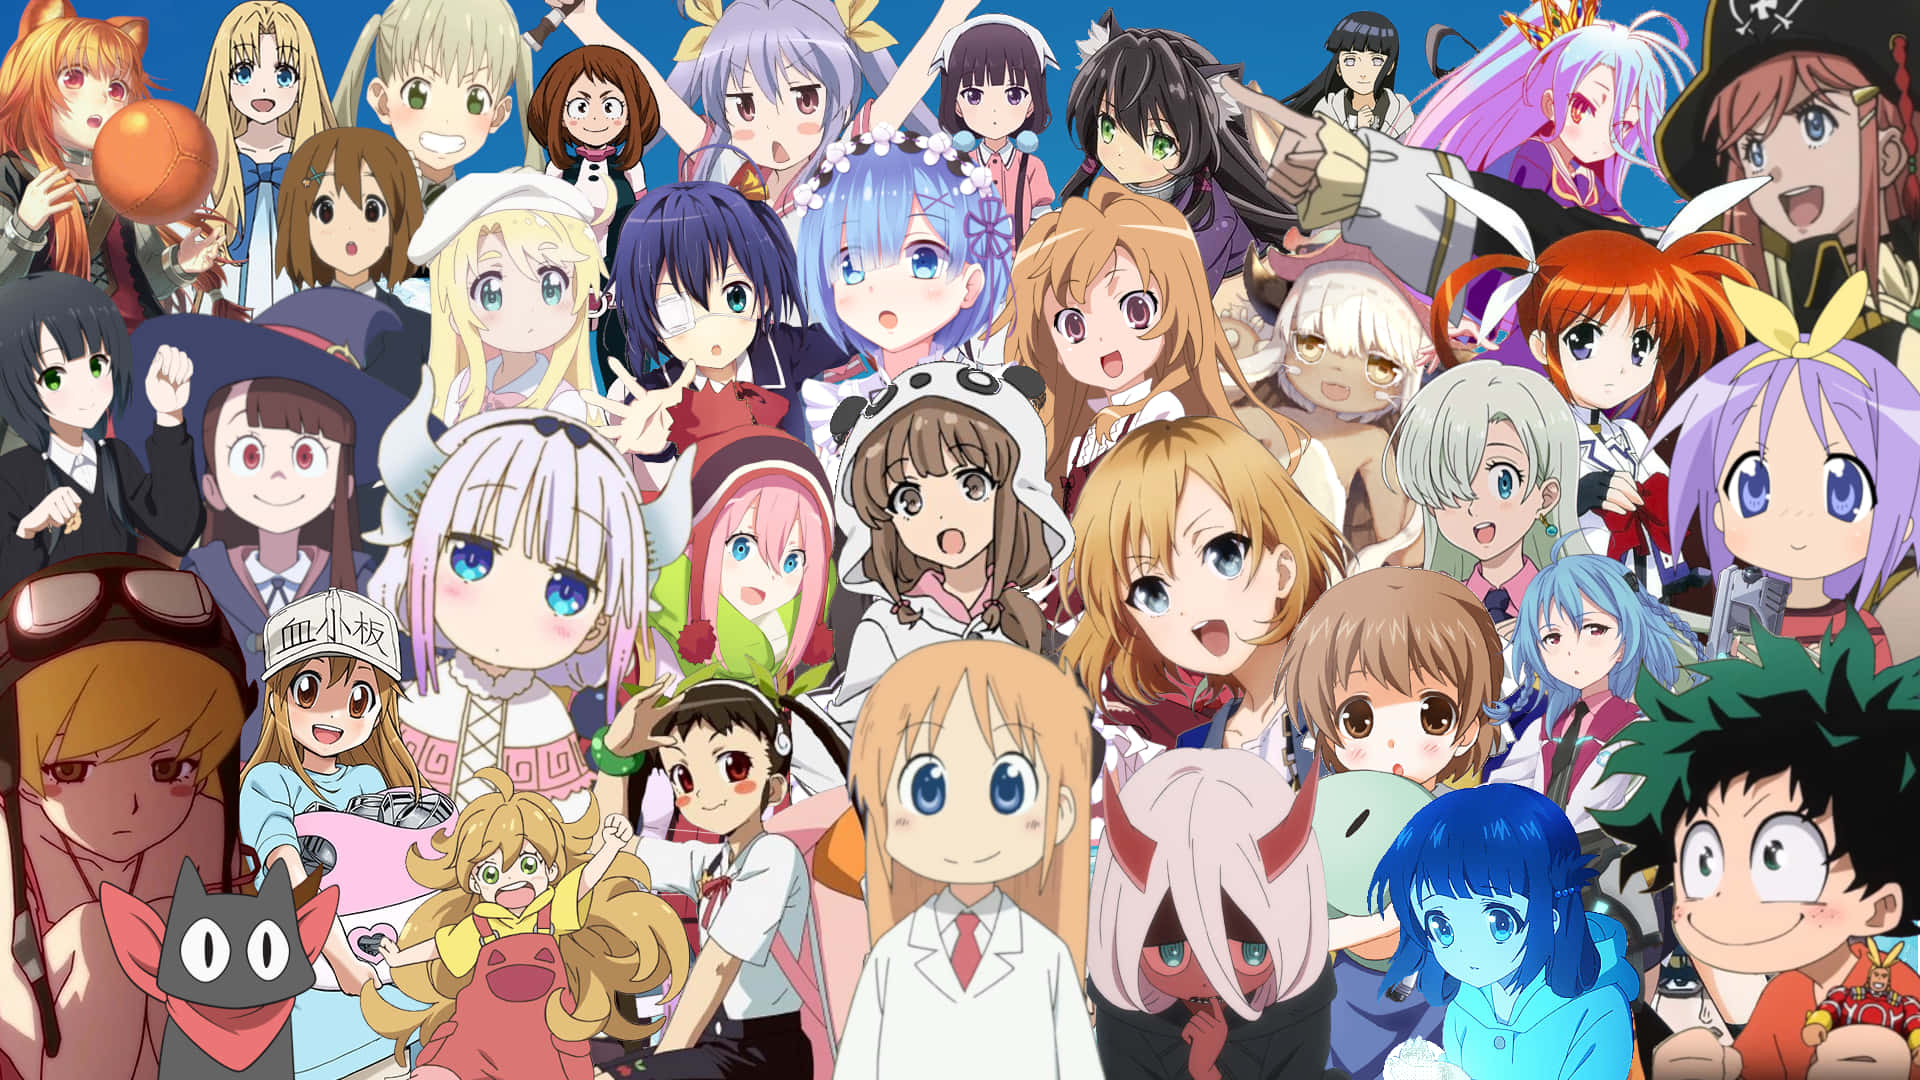 = Anime karakterer i en gruppe af mennesker Wallpaper